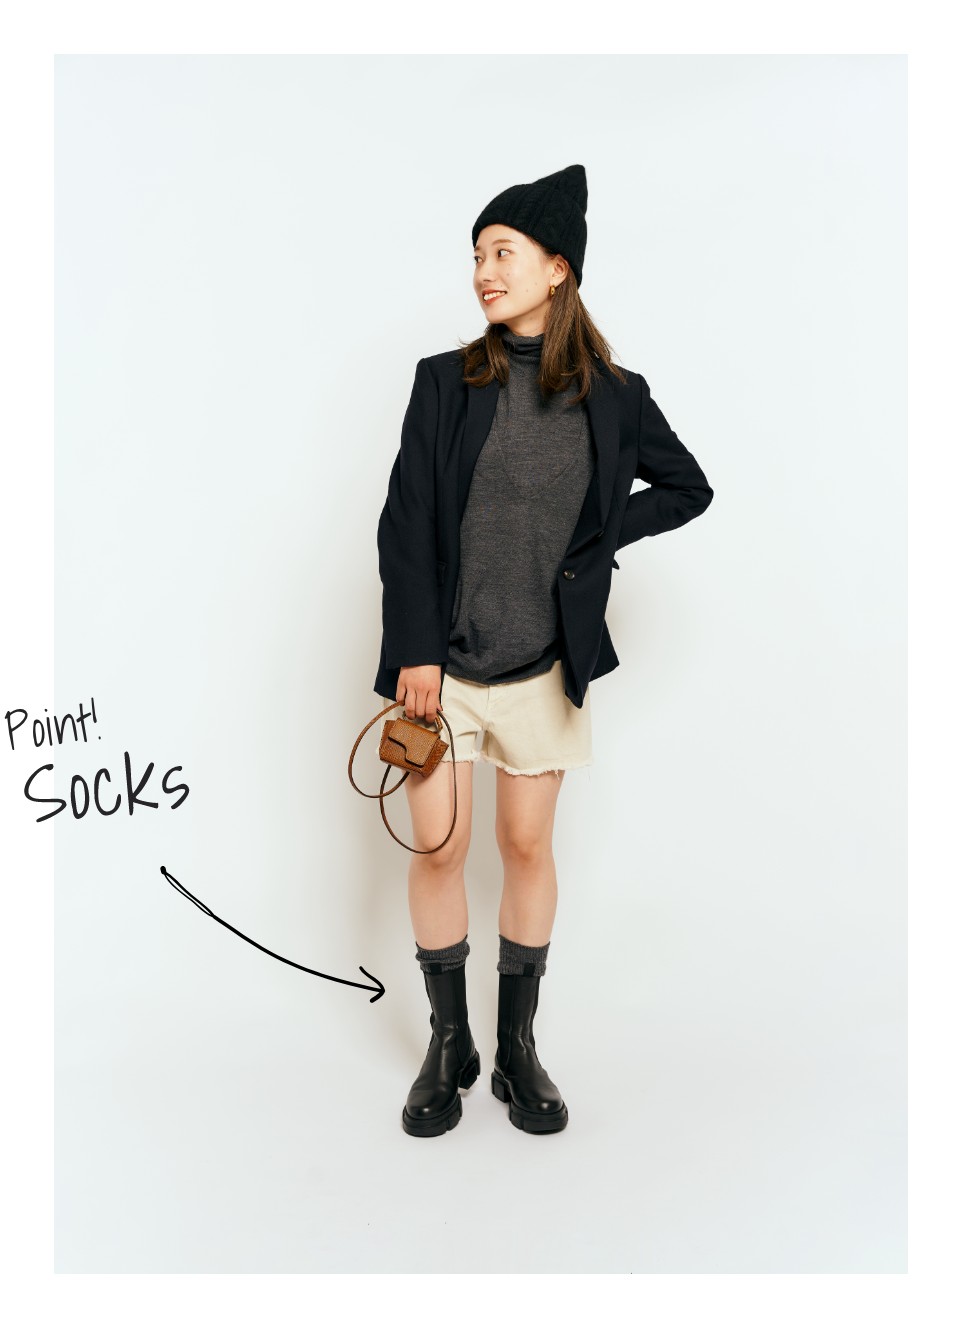 BOOTS.BOOTS.BOOTS. | Plageが提案する今年欠かせないブーツスタイル